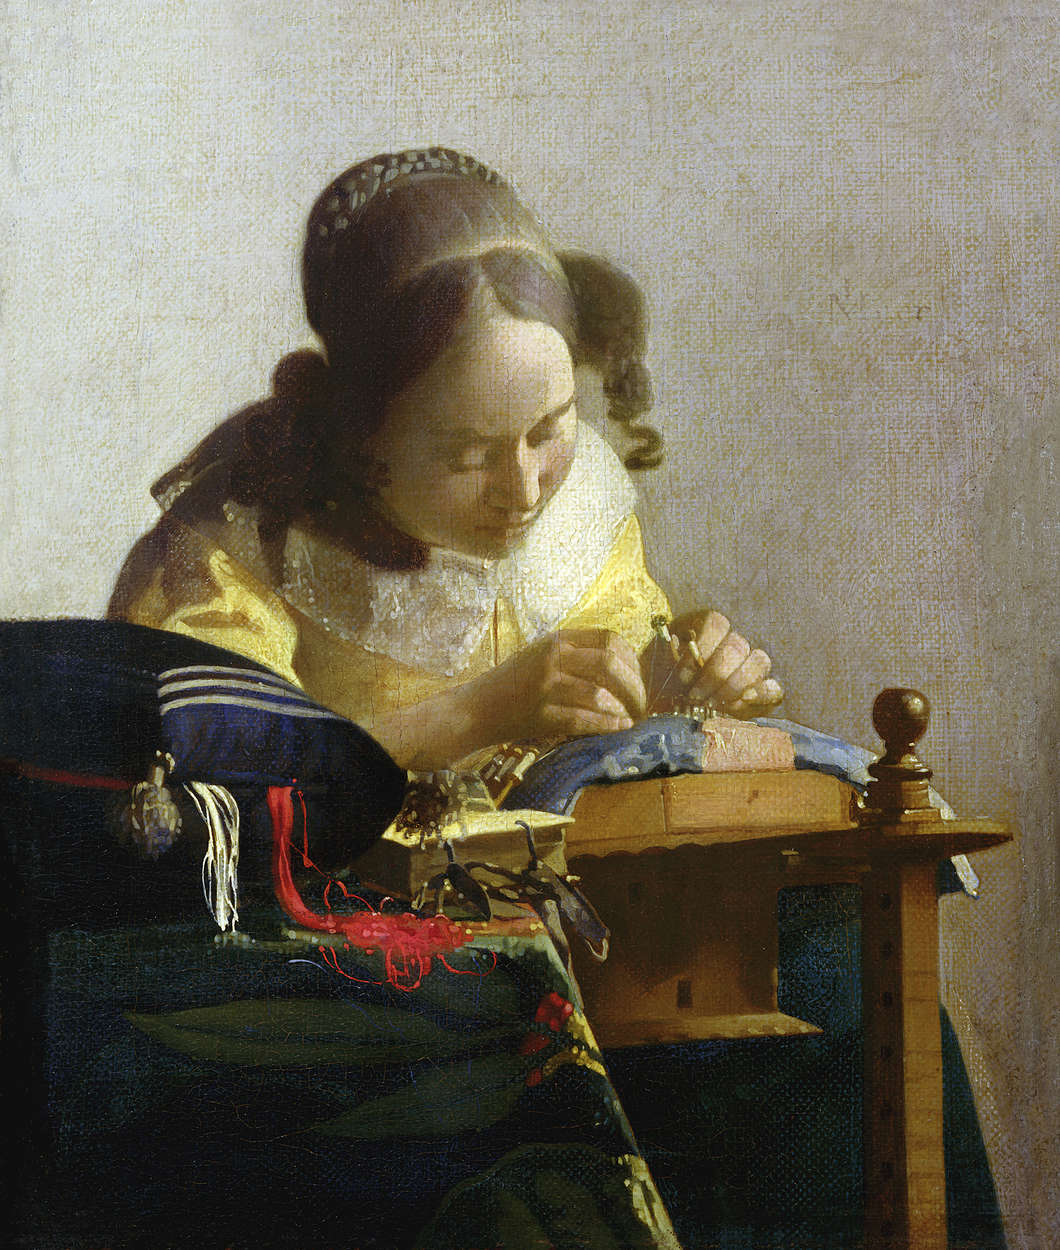             Papier peint panoramique "Les dentellières" de Jan Vermeer
        